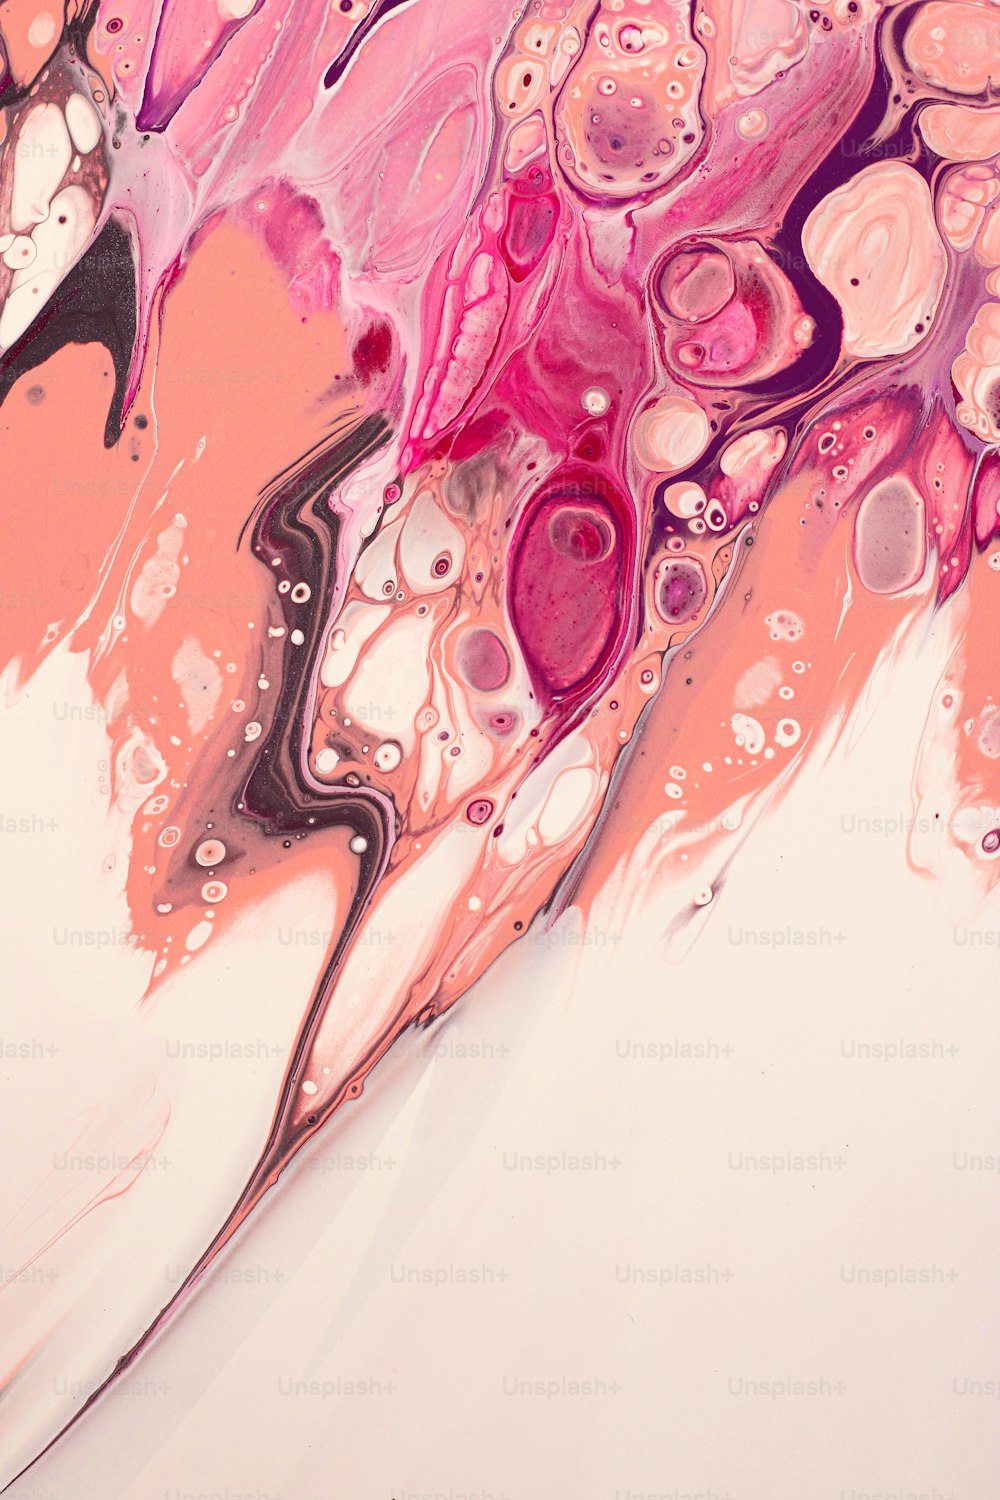 Una pintura abstracta con colores rosa y púrpura